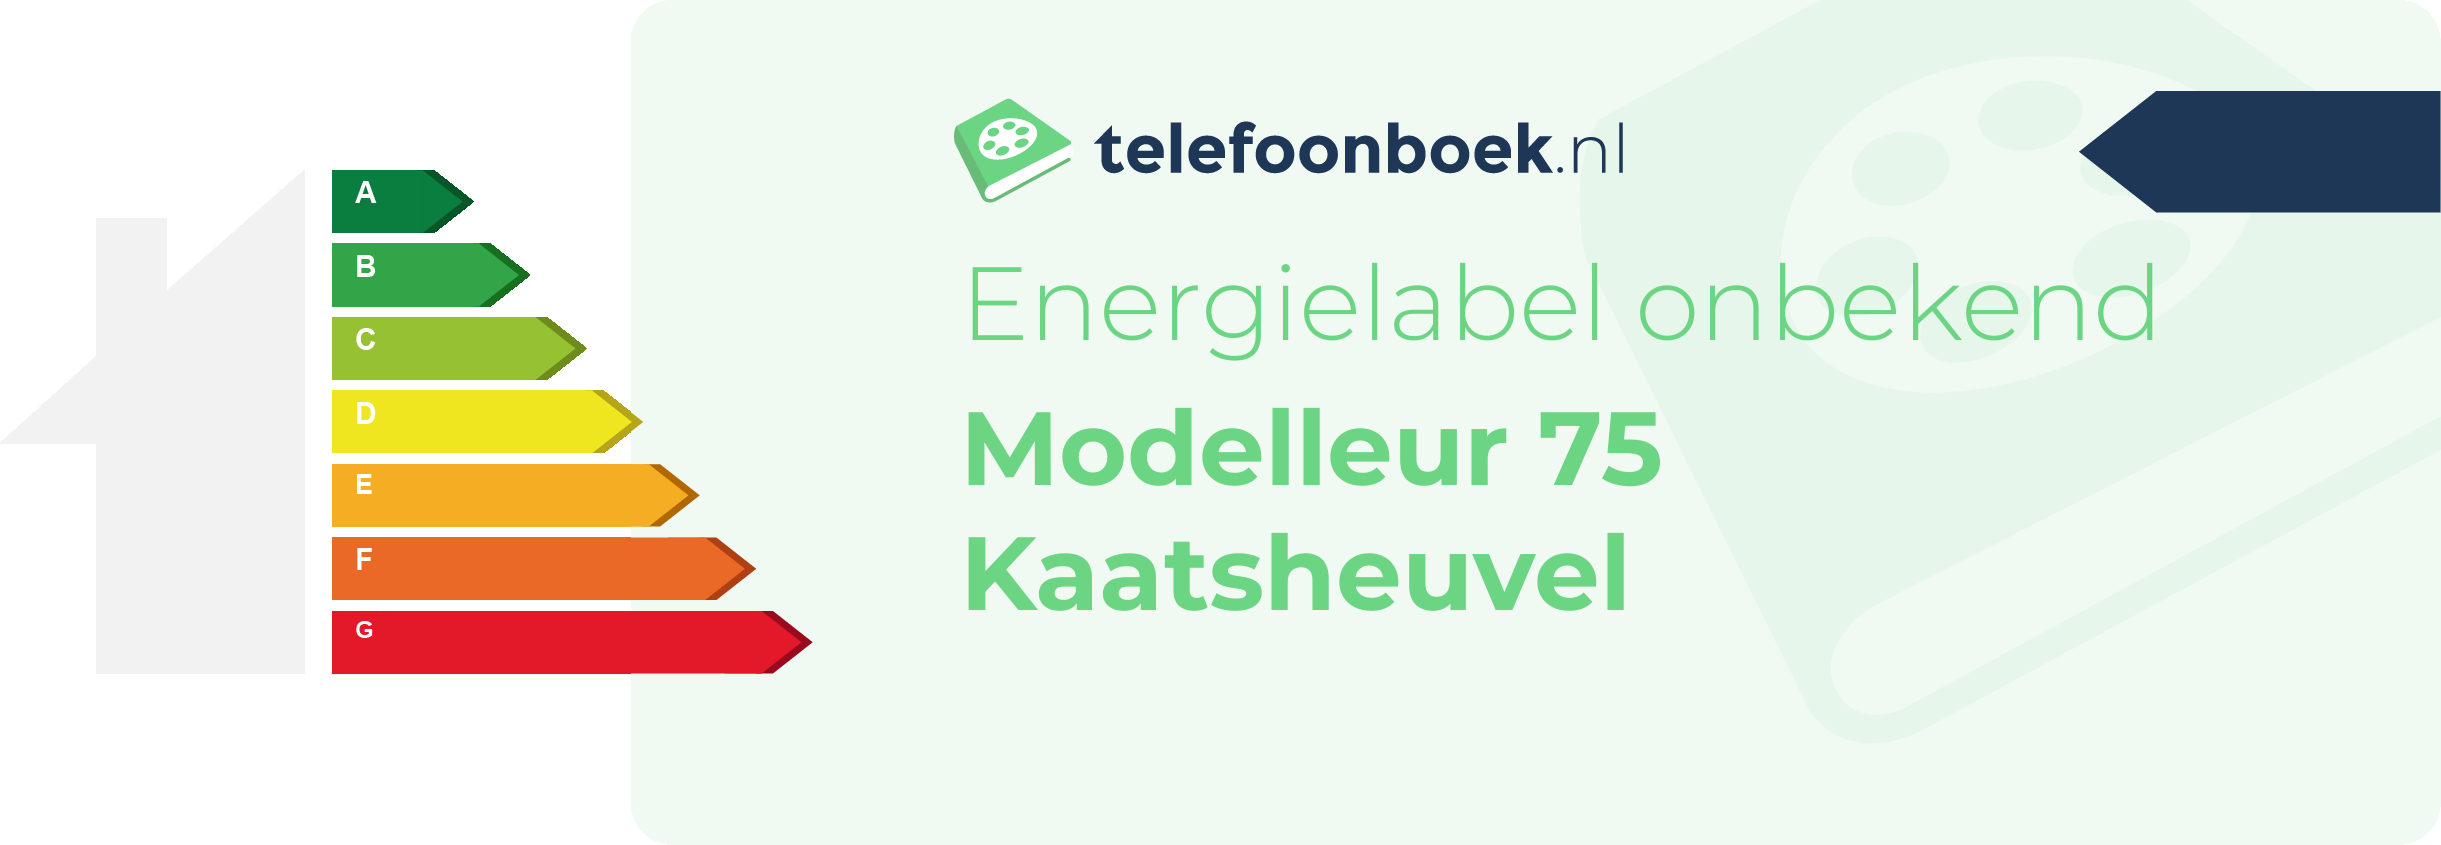 Energielabel Modelleur 75 Kaatsheuvel